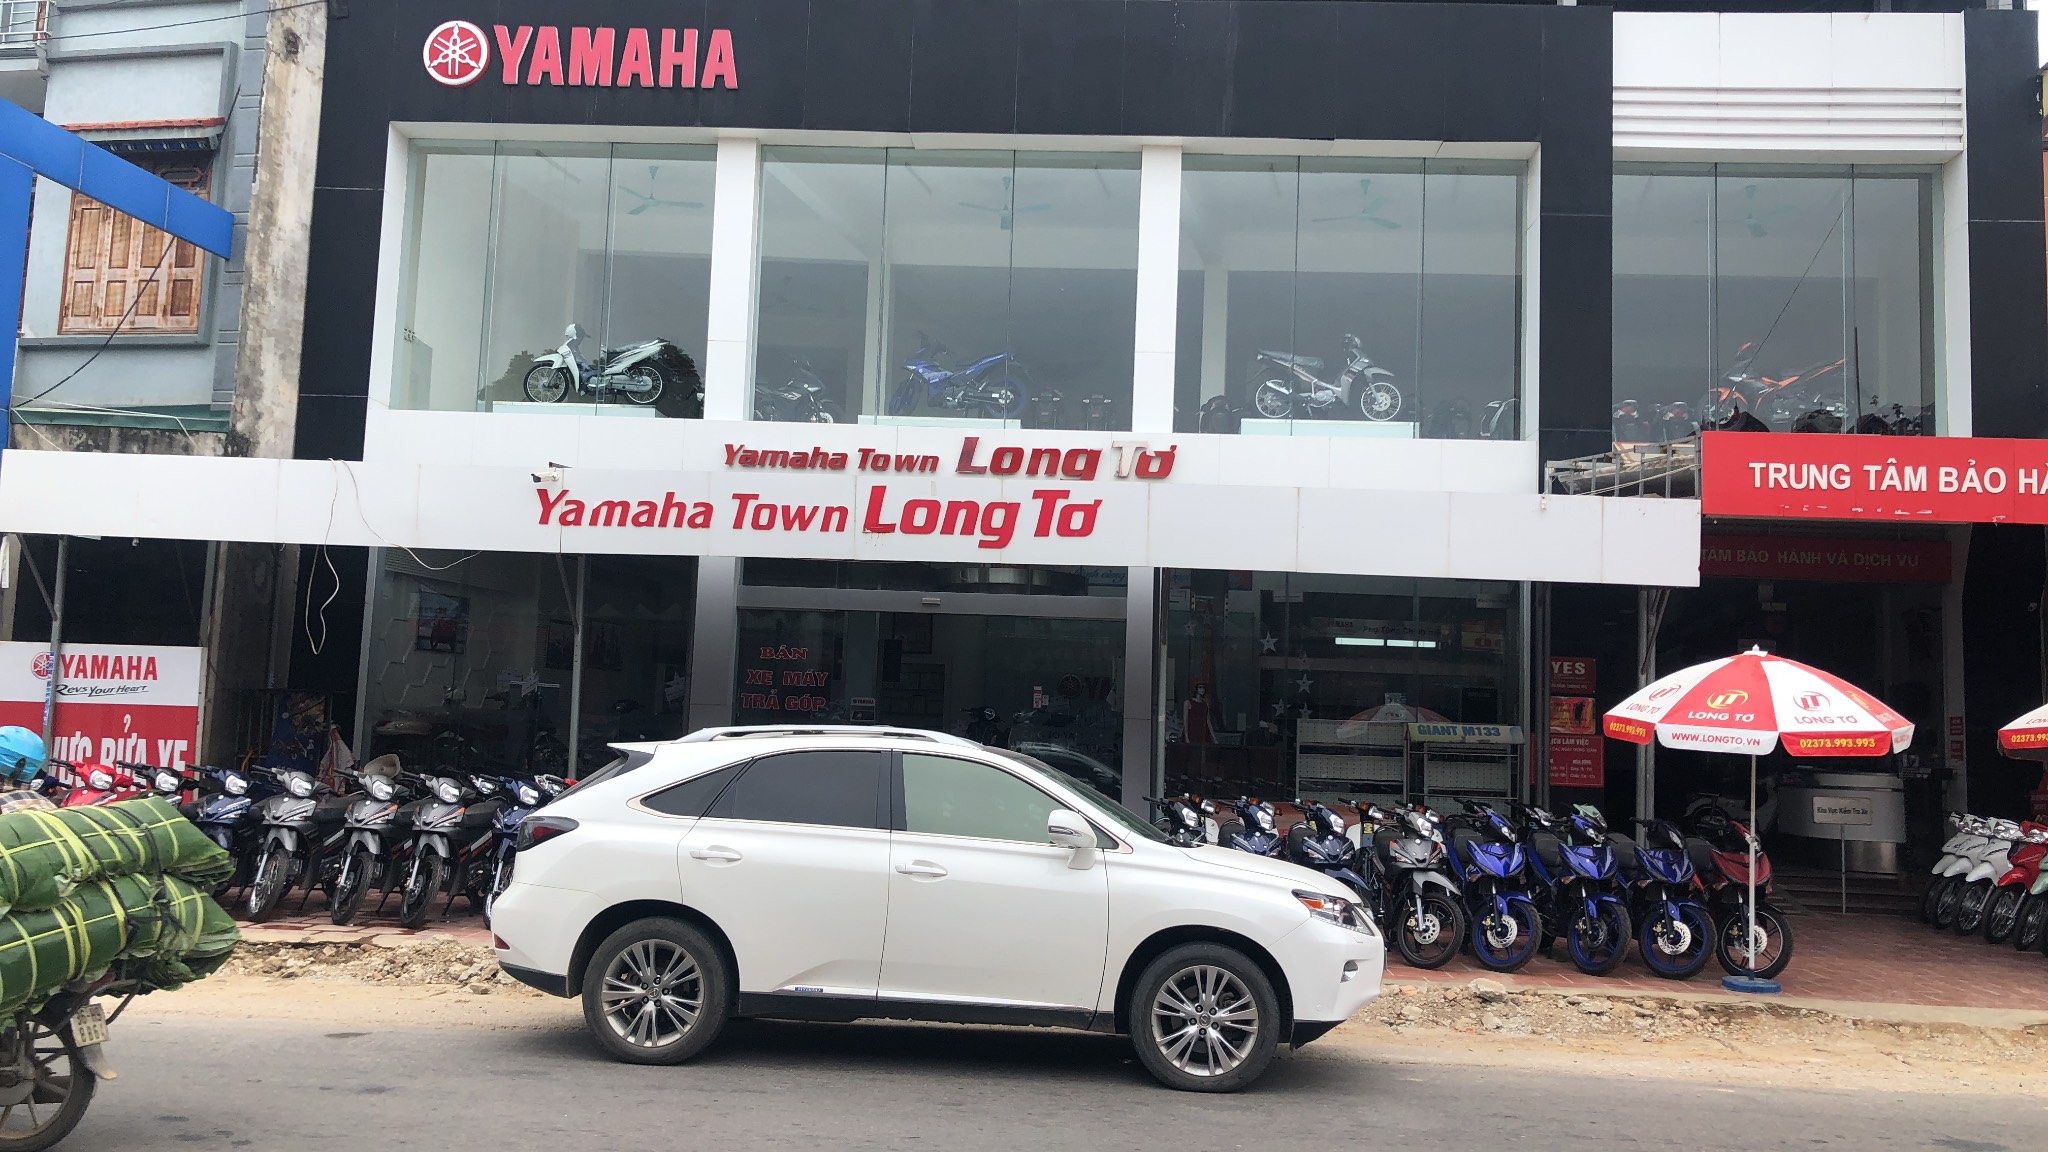 Yamaha Long Tơ